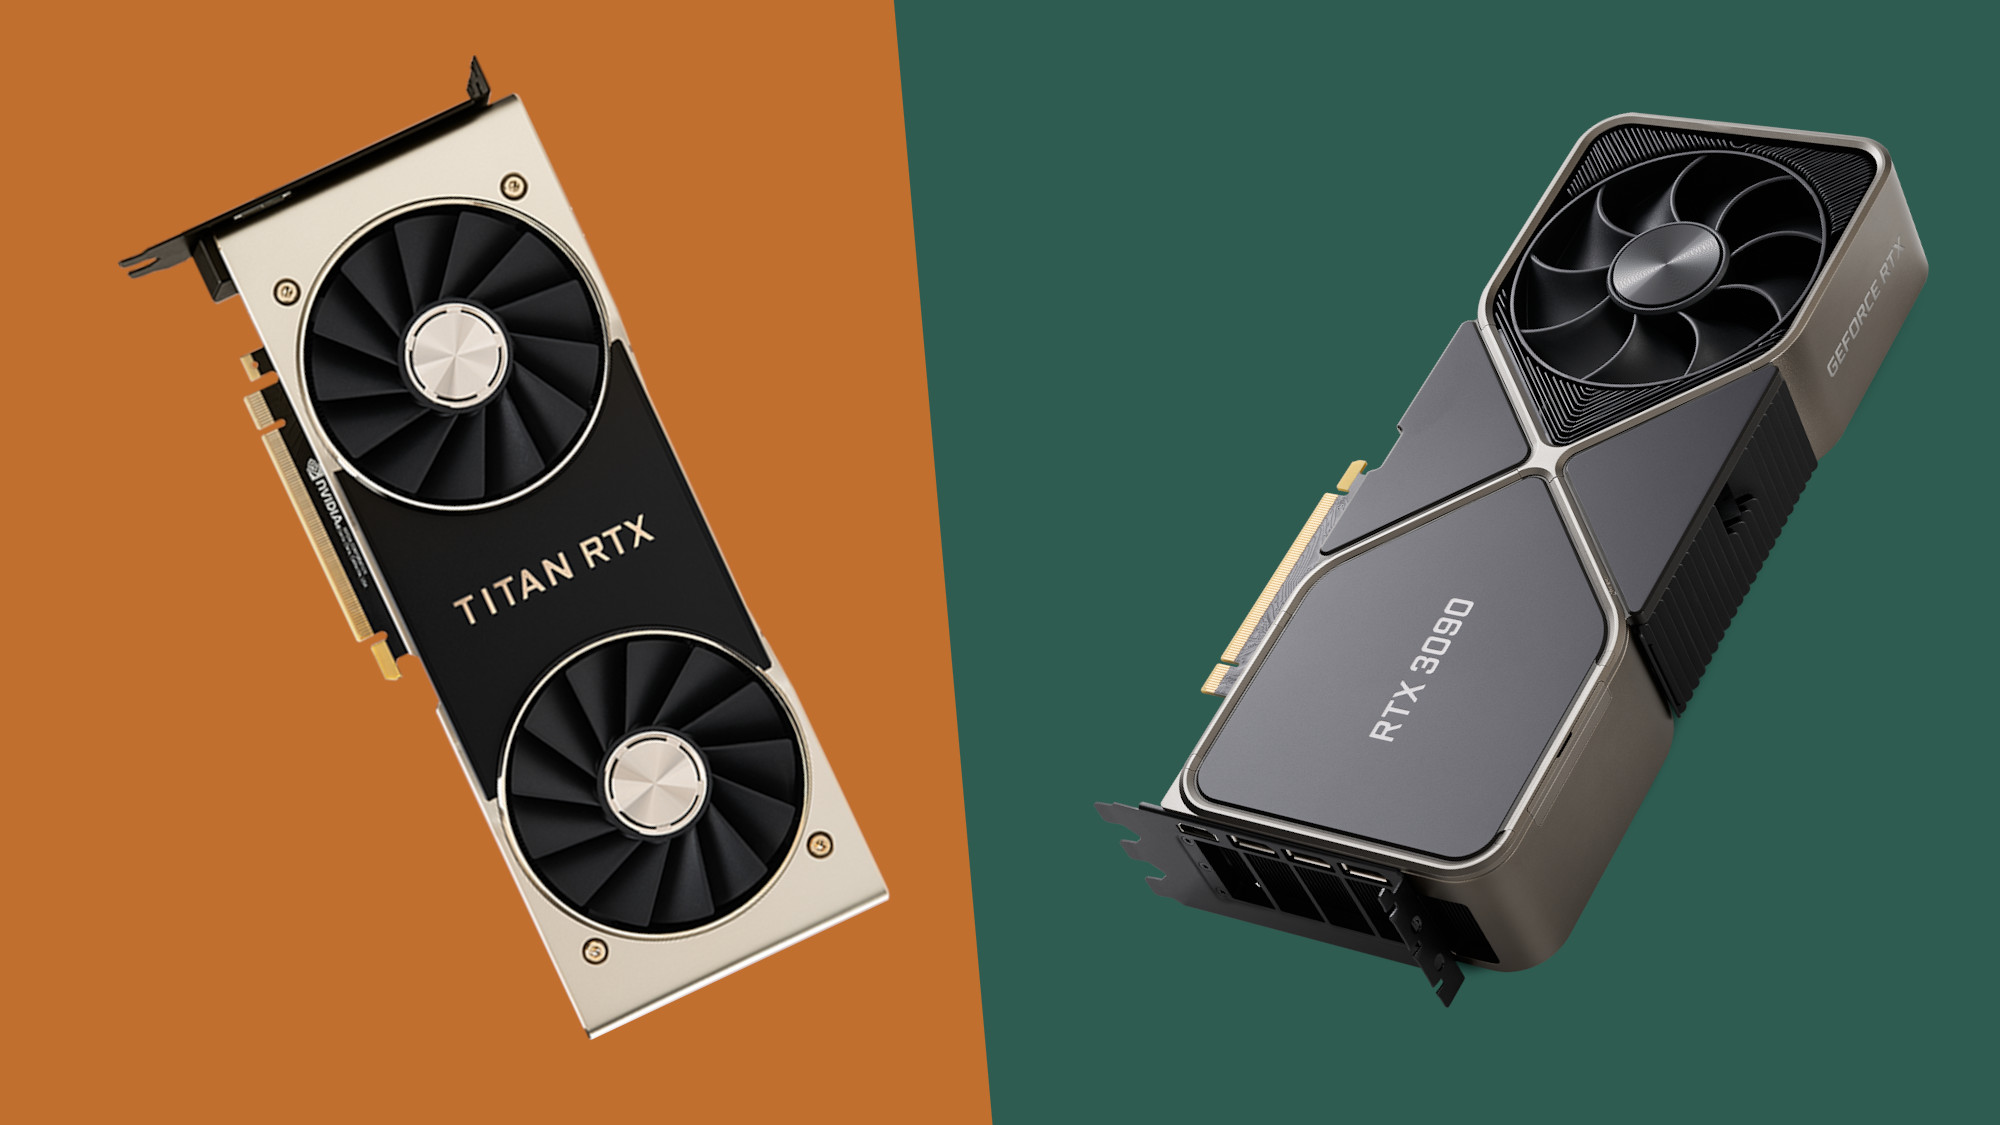 blød Surrey kvalitet Nvidia RTX 3090 vs Nvidia RTX Titan: battle of the 8K beasts | TechRadar